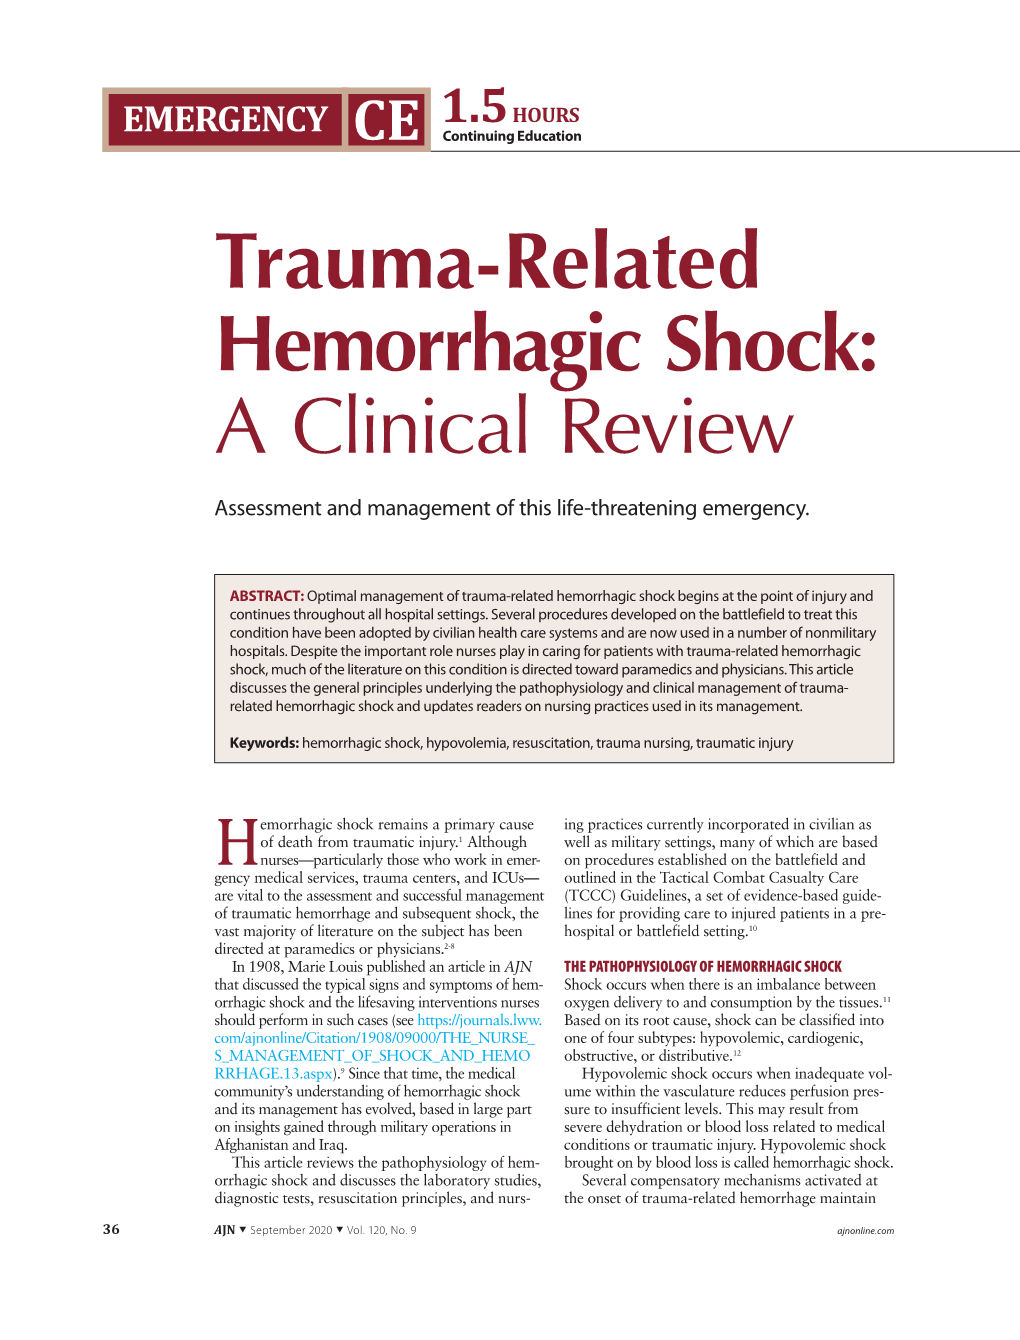 Trauma-Related Hemorrhagic Shock: a Clinical Review